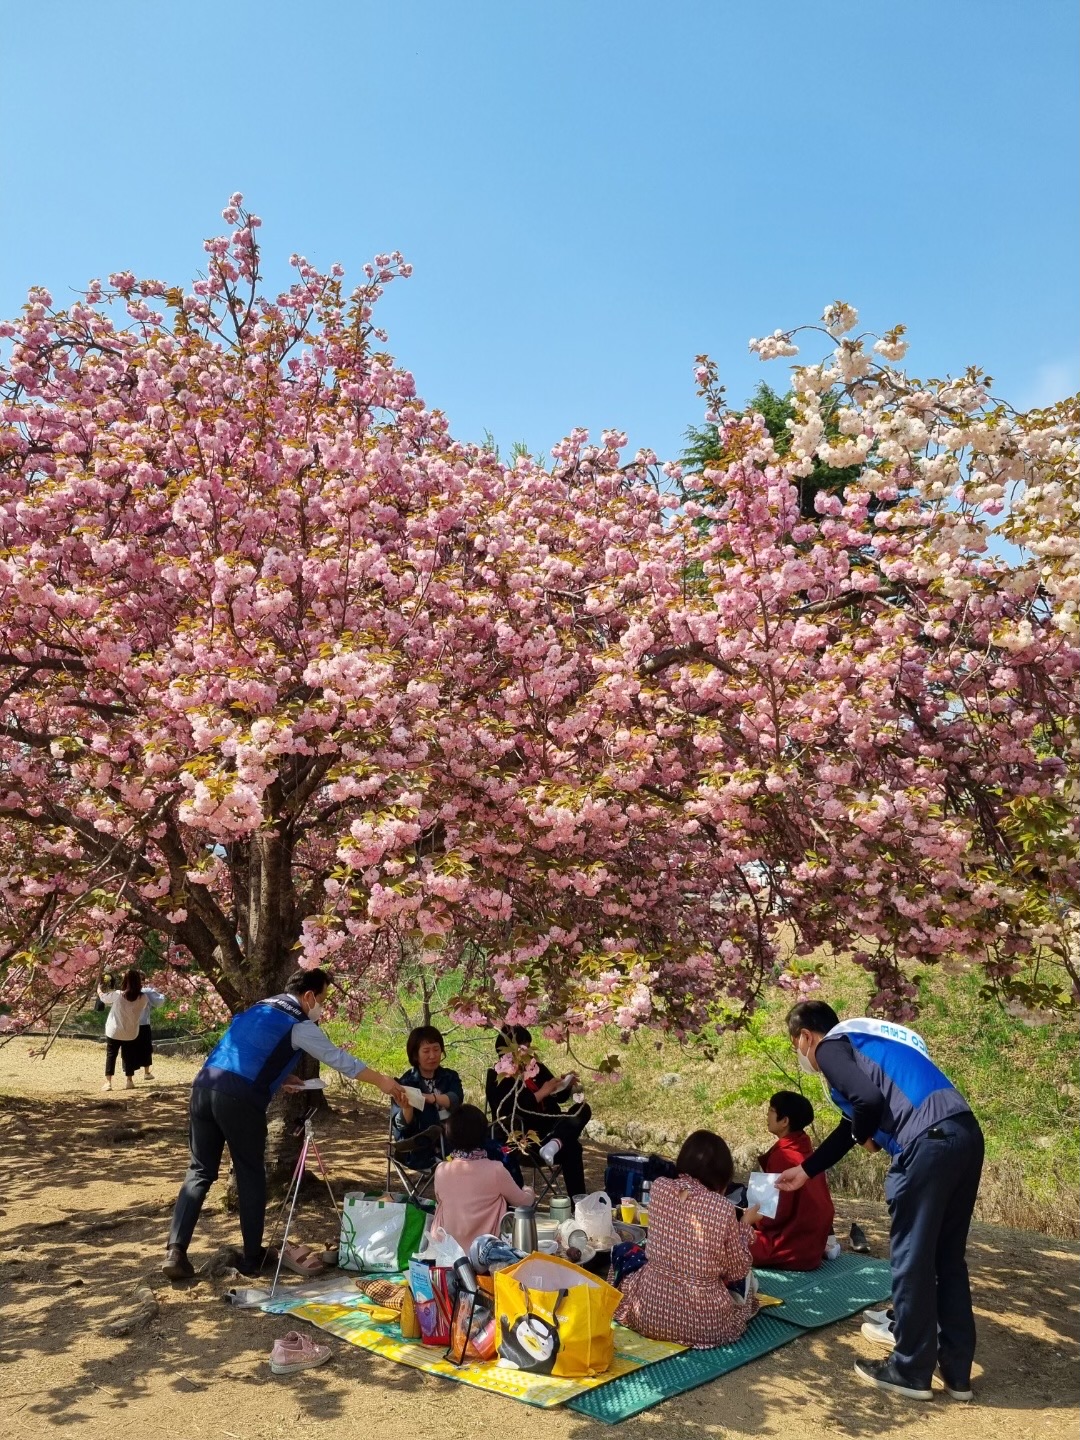 한수원 수소융복합처가 경주 왕겹벚꽃 명소를 찾은 관광객을 대상으로 청렴문화 확산 캠페인을 시행했다.    사진 = 한수원 홍보실